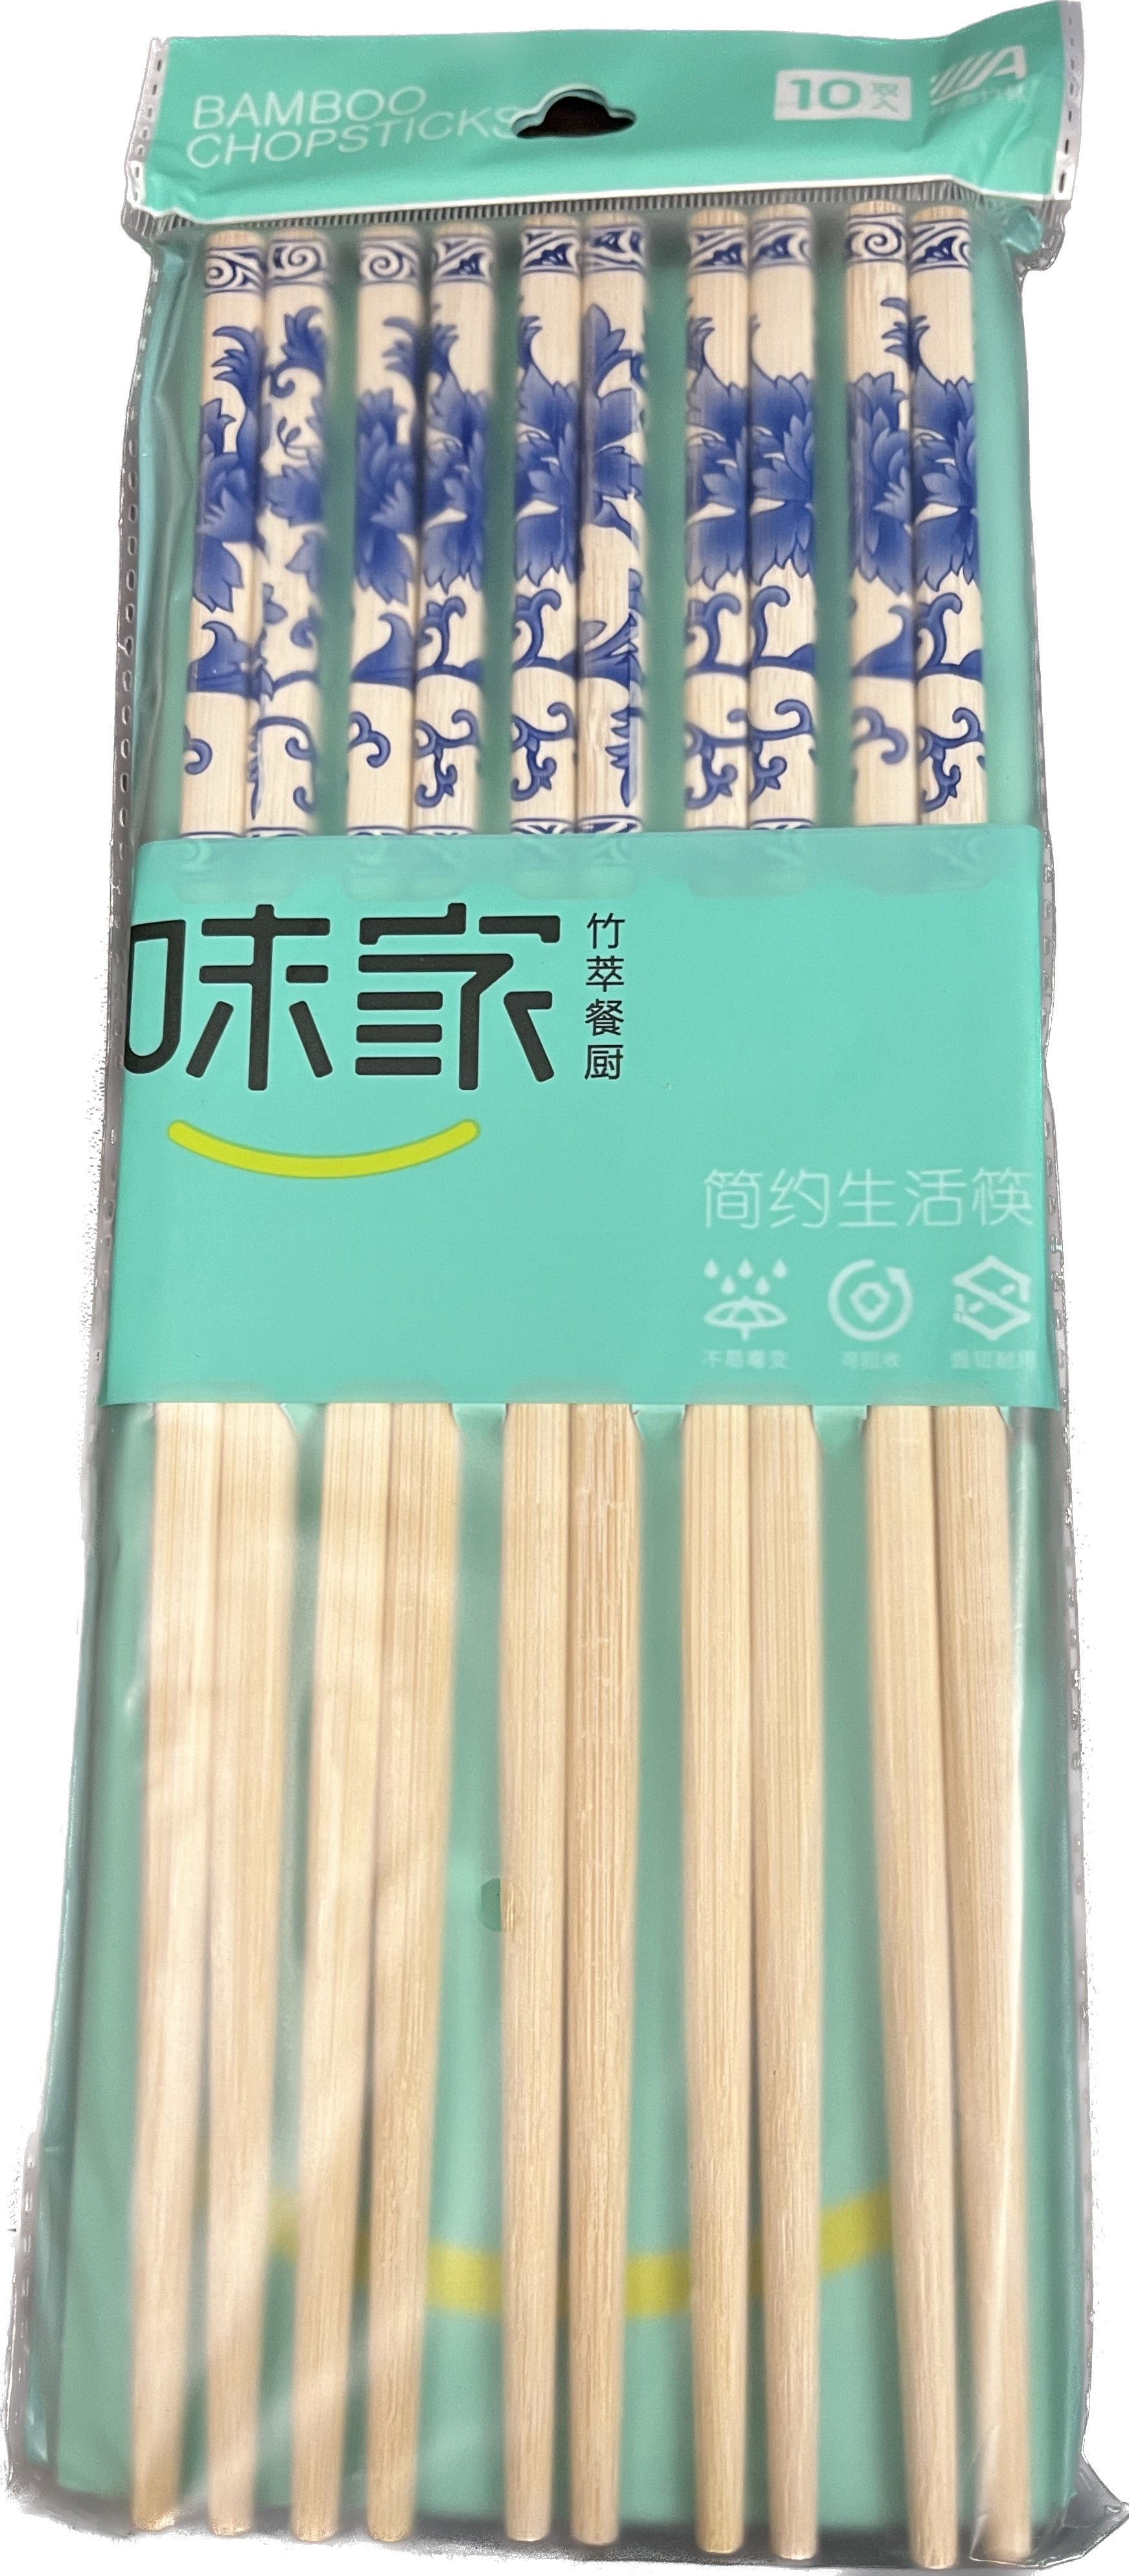 Simple Life Bamboo Chopsticks - 10p Set